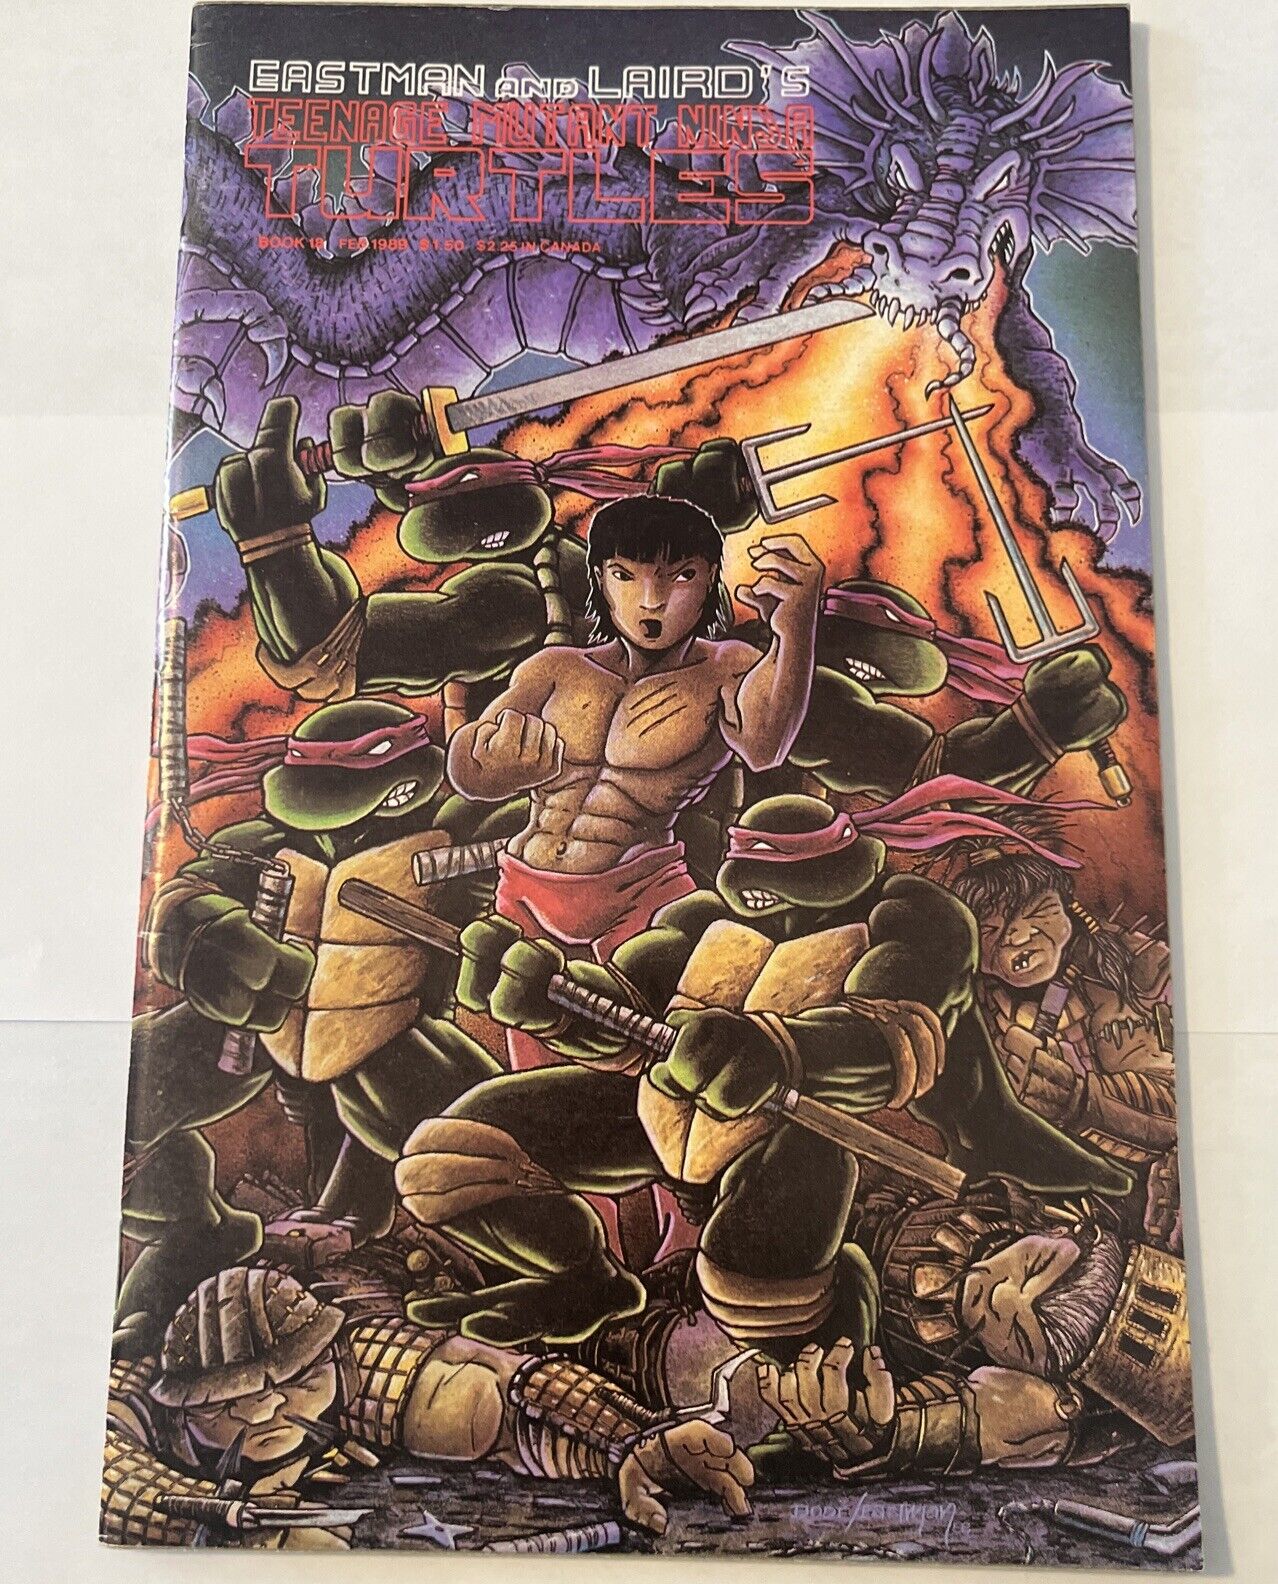 Teenage Mutant Ninja Turtles #18 Mirage 1989 Eastman Laird TMNT